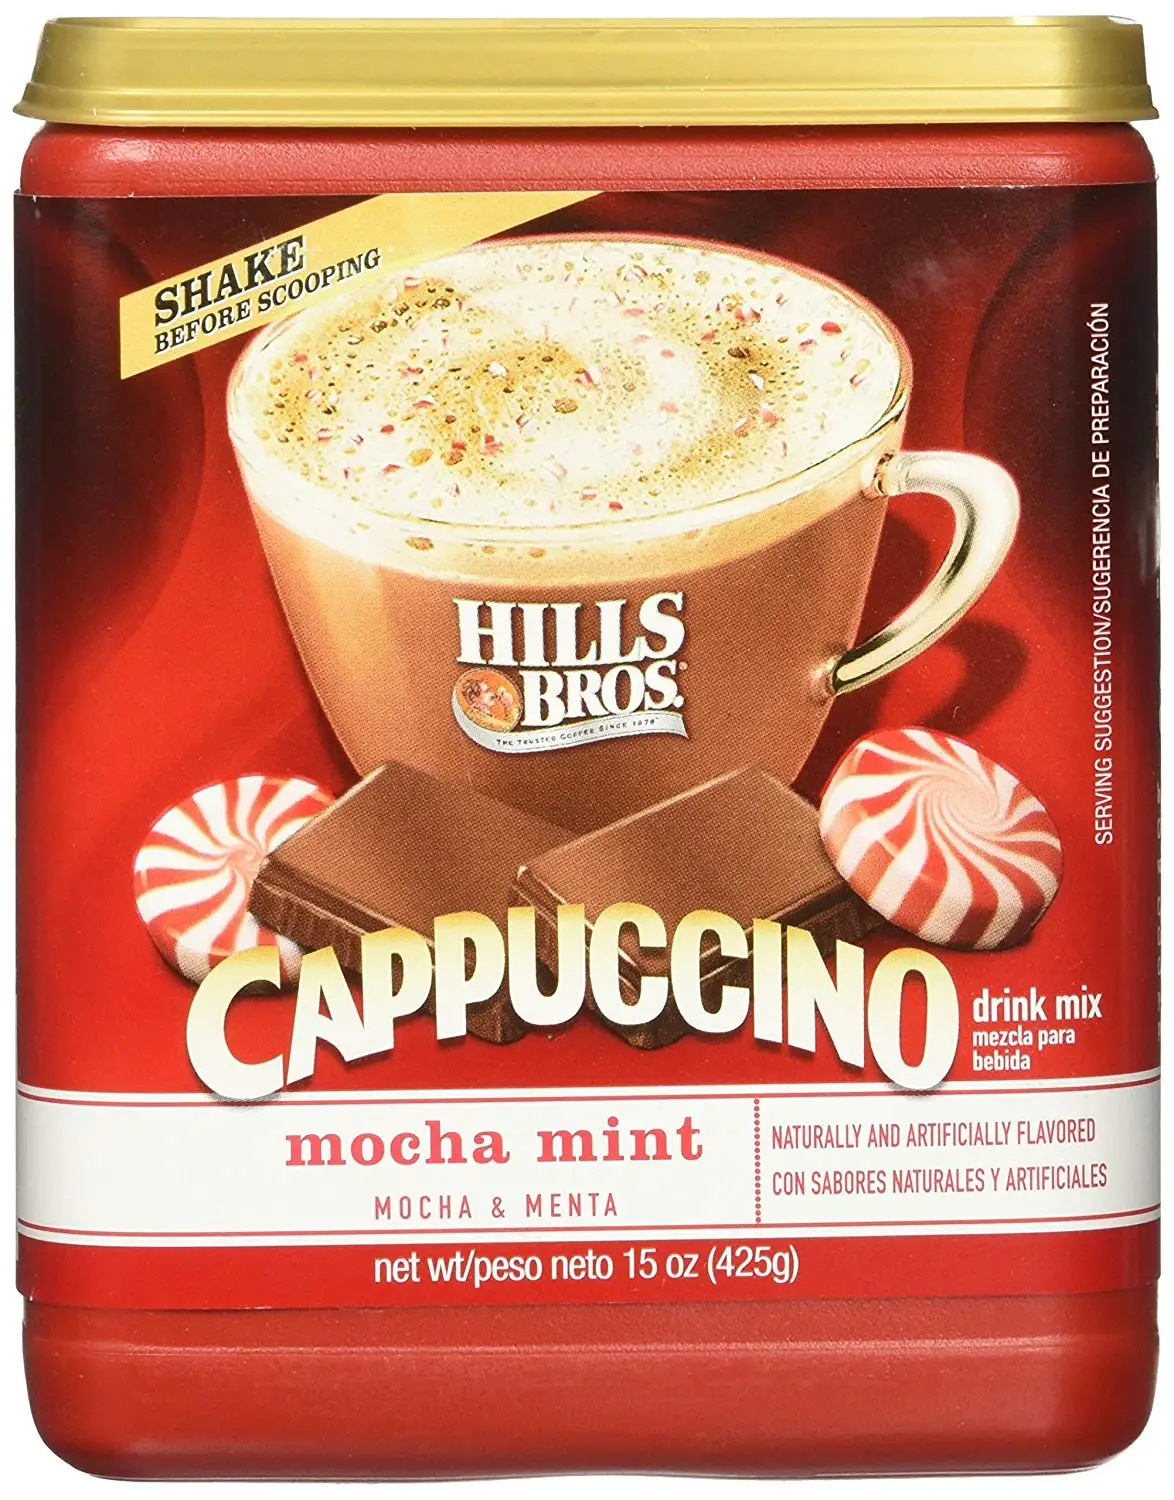 hills bros cappuccino